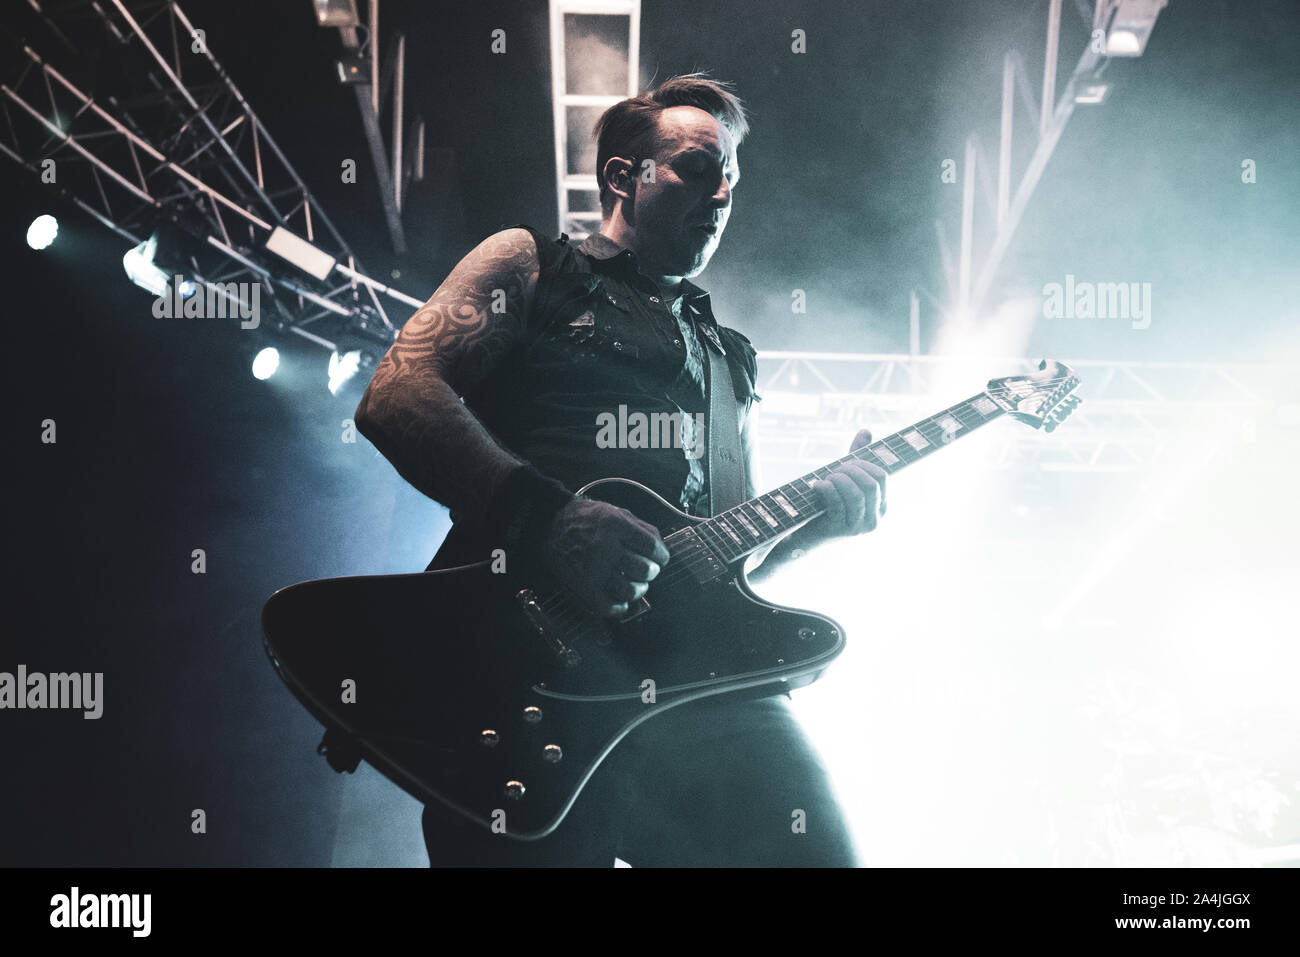 FABRIQUE, Milano, Italien - 2019/10/14: Die dänische Band Volbeat live auf der Bühne Fabrique, für das Zurückspulen Replay Reboud band Tour 2019 Stockfoto